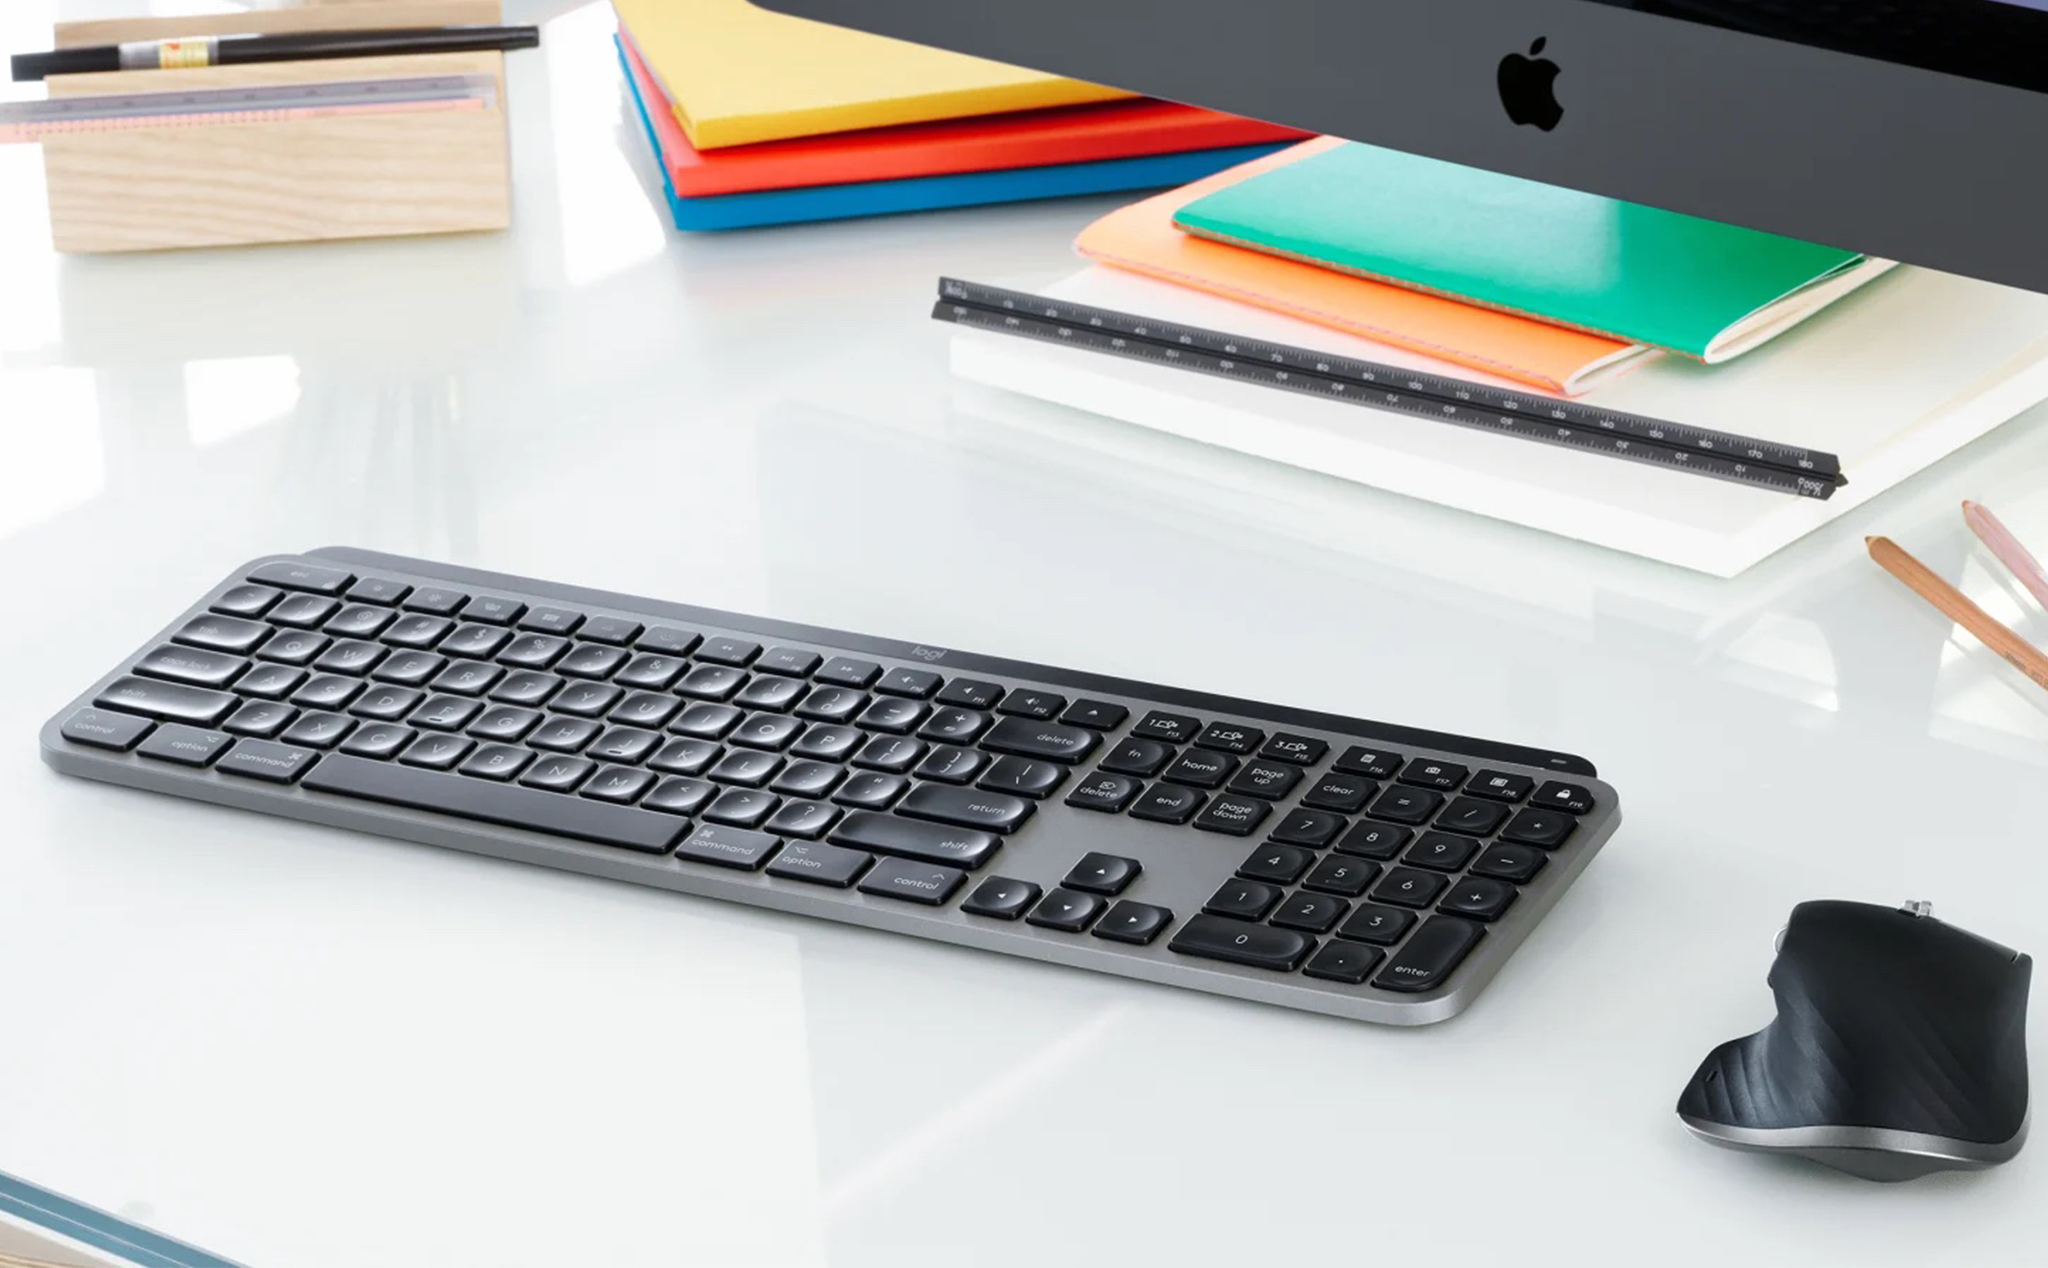 Bạn đang sử dụng Mac và đang tìm kiếm một bàn phím chất lượng hoàn hảo cho mình? MX Keys dành cho Mac chính là lựa chọn tuyệt vời dành cho bạn. Hãy xem ngay hình ảnh về bàn phím này để cảm nhận sự khác biệt nhé!